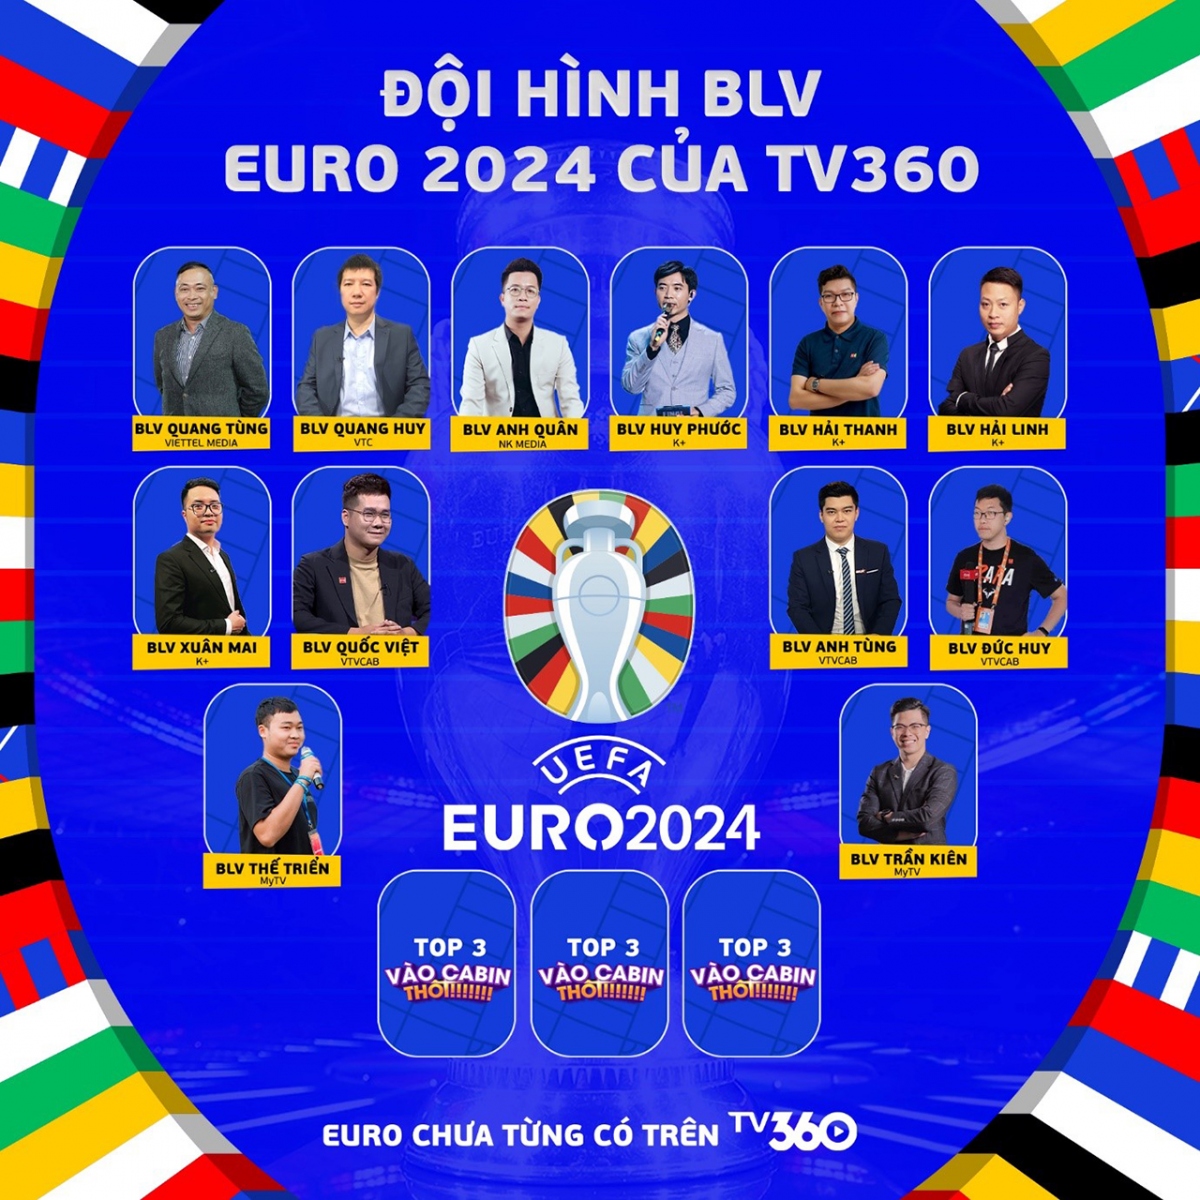 tv360 cong bo phat song mien phi vong chung ket euro 2024 hinh anh 1